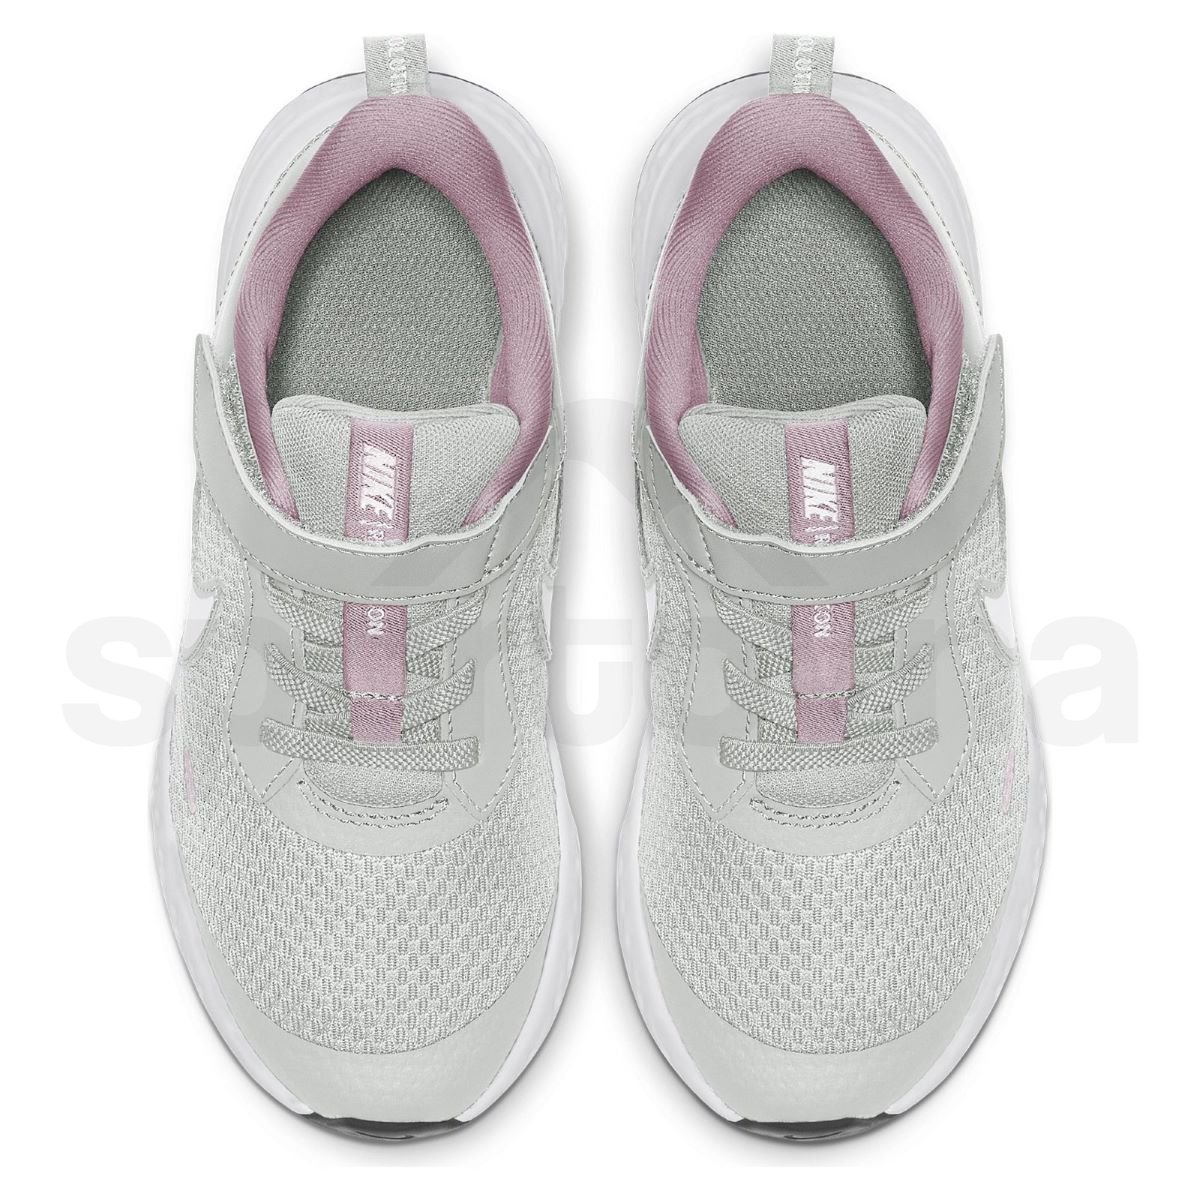 Obuv Nike Revolution 5 K - šedá/růžová